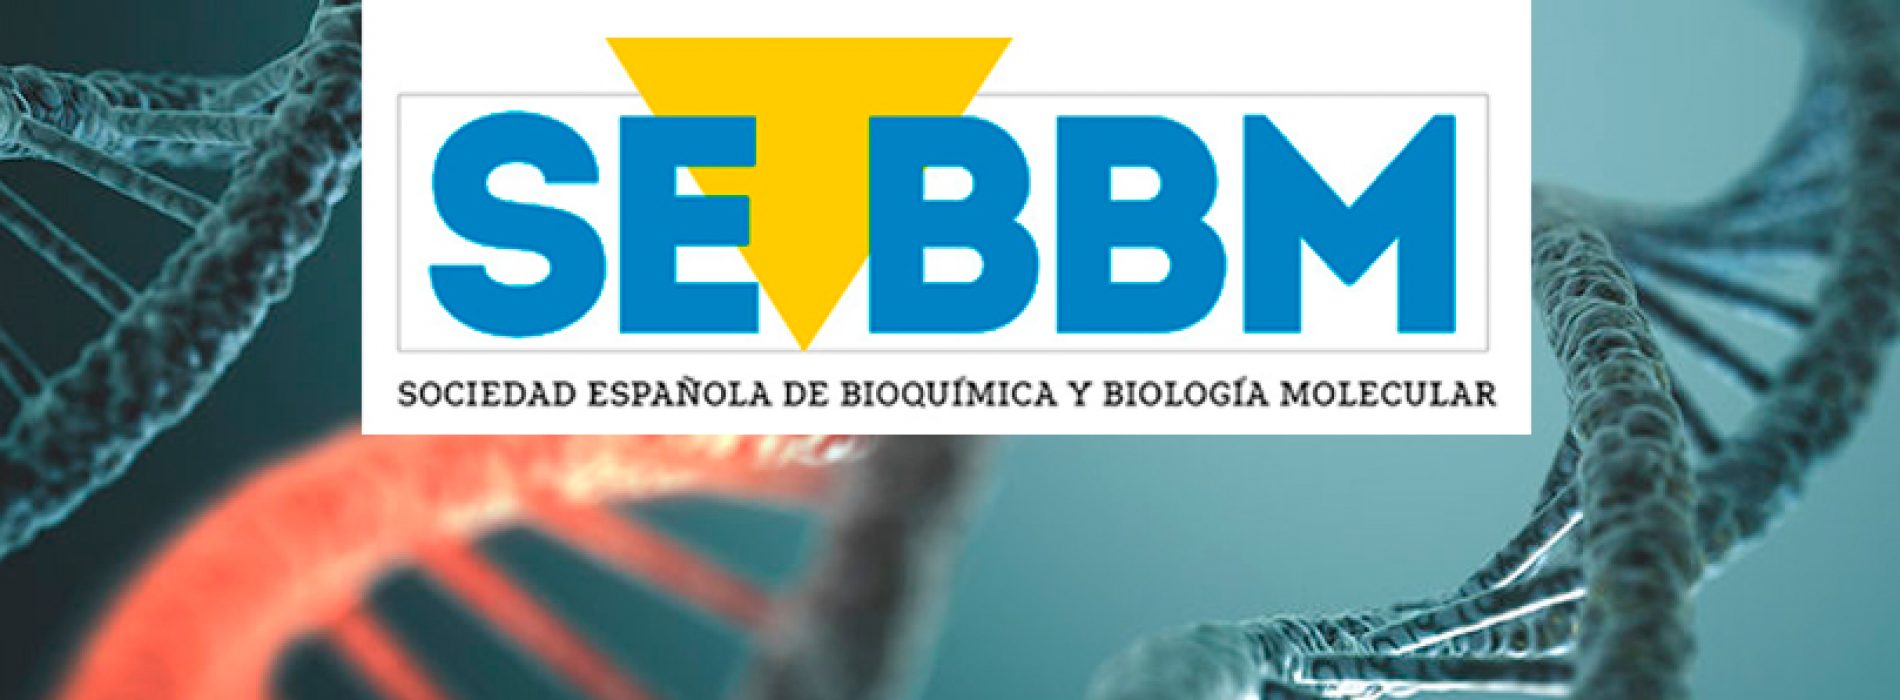 Revista de la Sociedad Española de Bioquímica y Biología Molecular | SEEBM